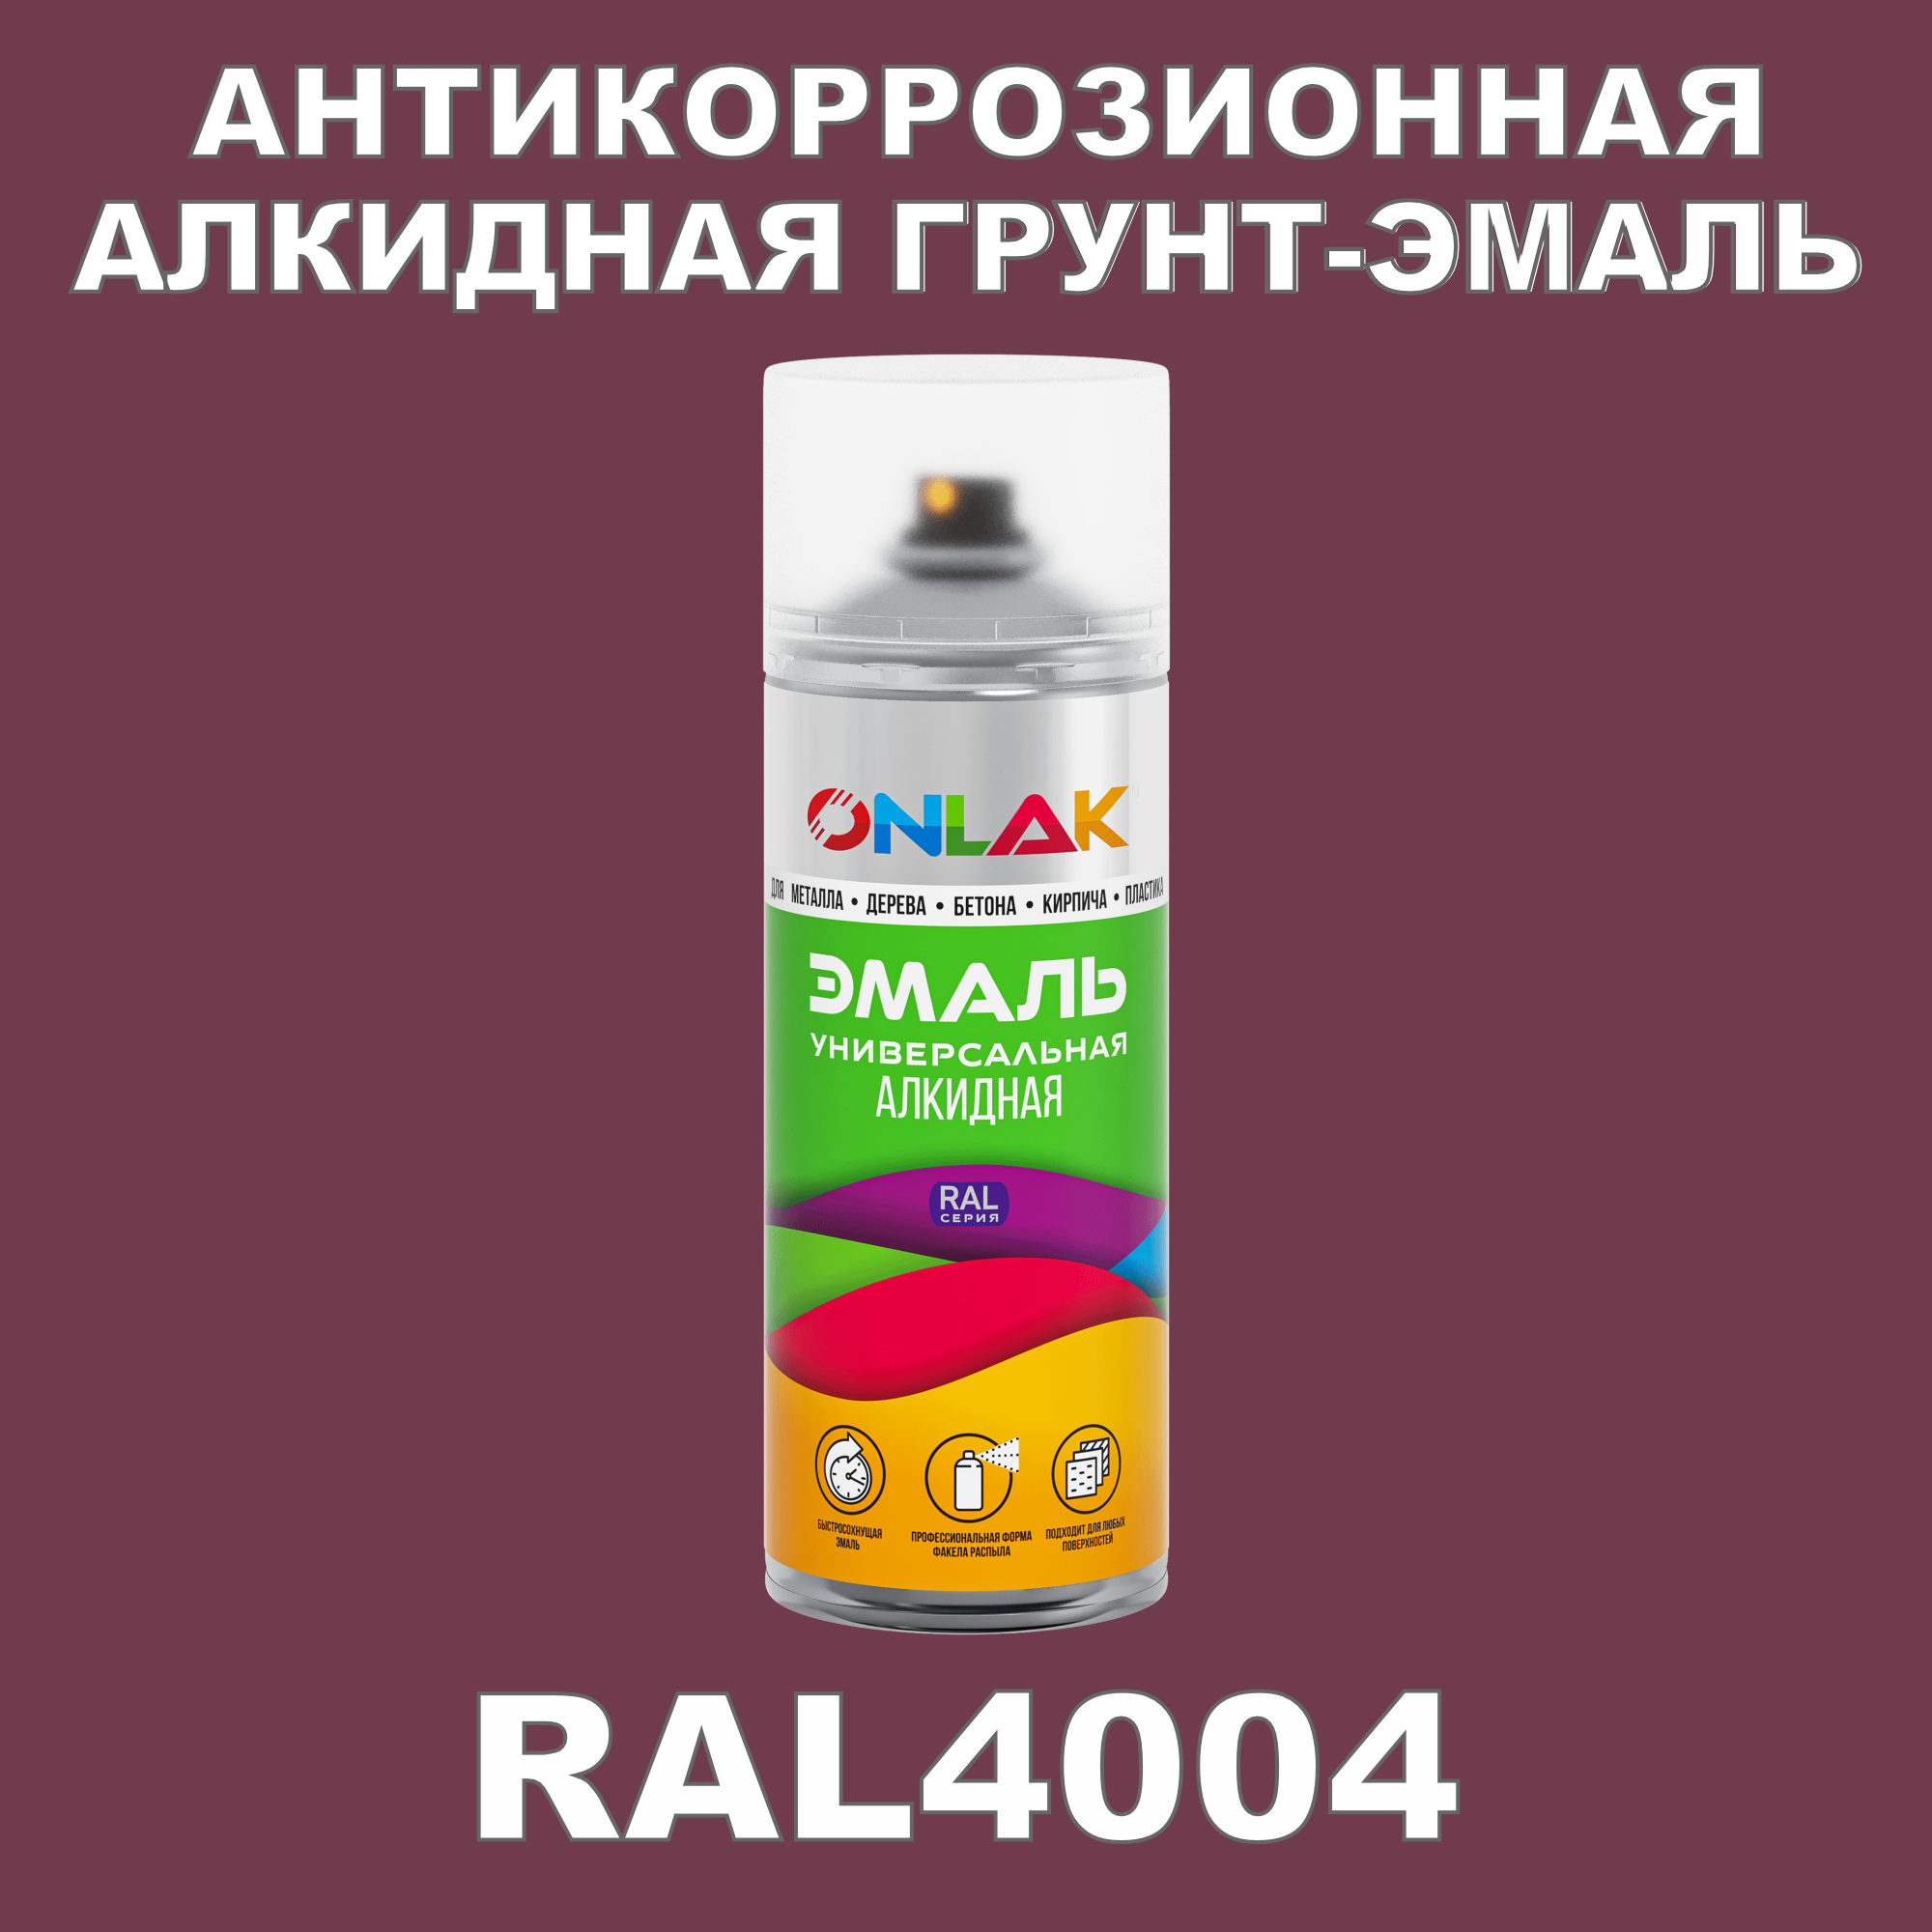 Антикоррозионная грунт-эмаль ONLAK RAL 4004,фиолетовый,657 мл